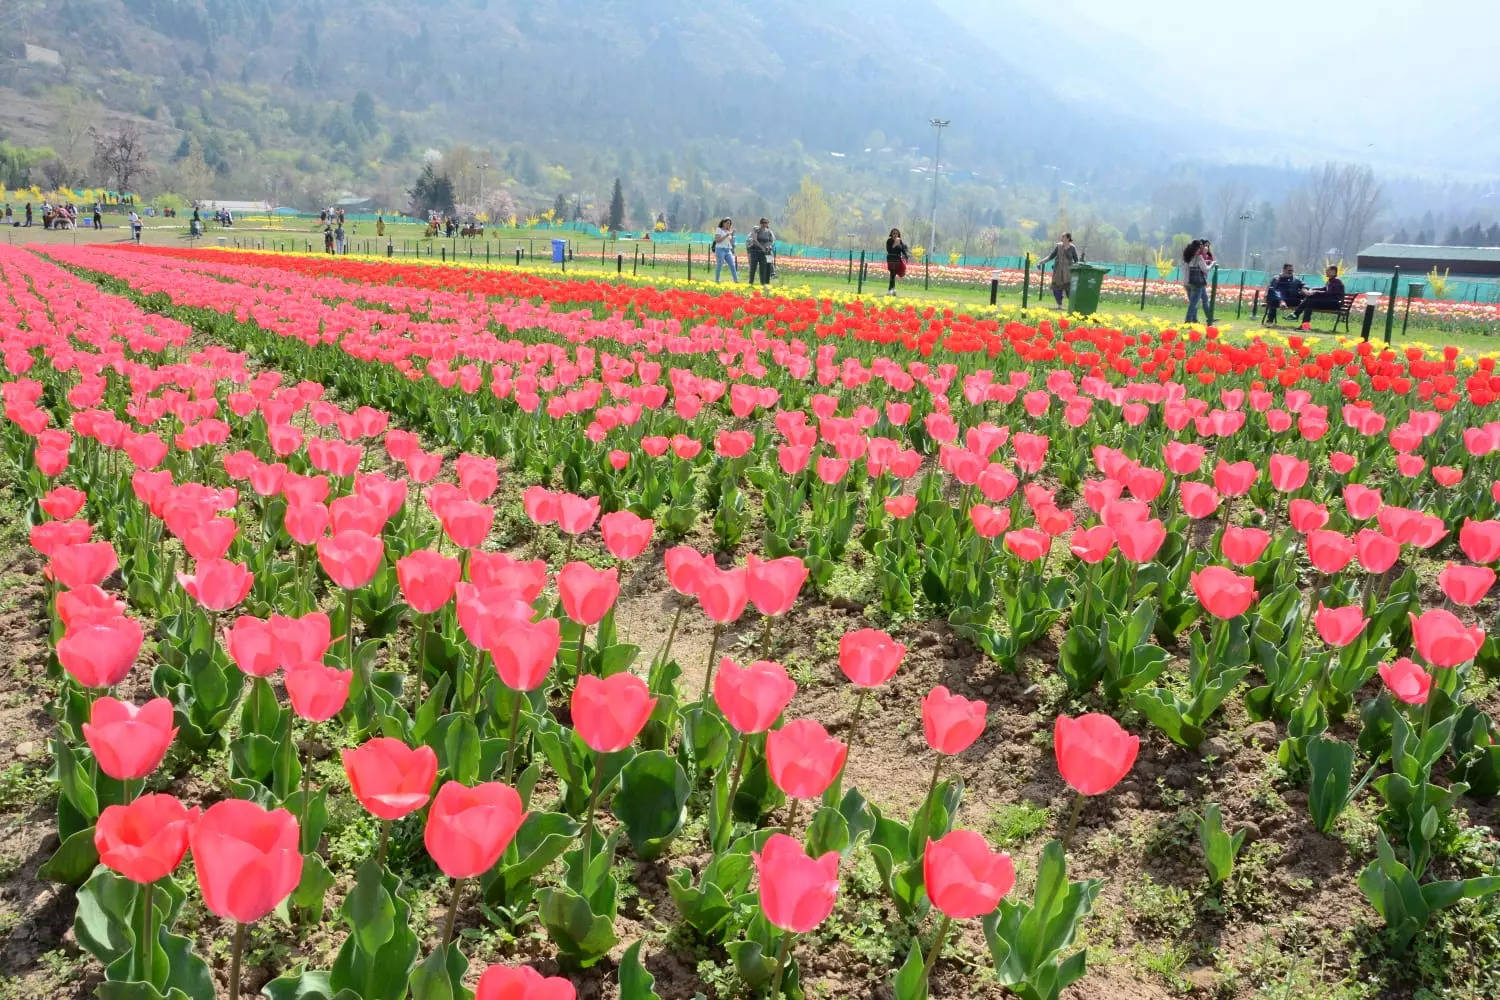 Vườn hoa tulip lớn nhất châu Á chính là nơi mà bạn có thể tìm thấy hàng triệu đóa hoa tulip với sắc màu và hình dáng đa dạng. Bạn sẽ được trải nghiệm cảm giác thú vị khi đi dạo trong vườn hoa rộng lớn này và ngắm nhìn những đám hoa tuyệt đẹp được bày trí tinh tế.